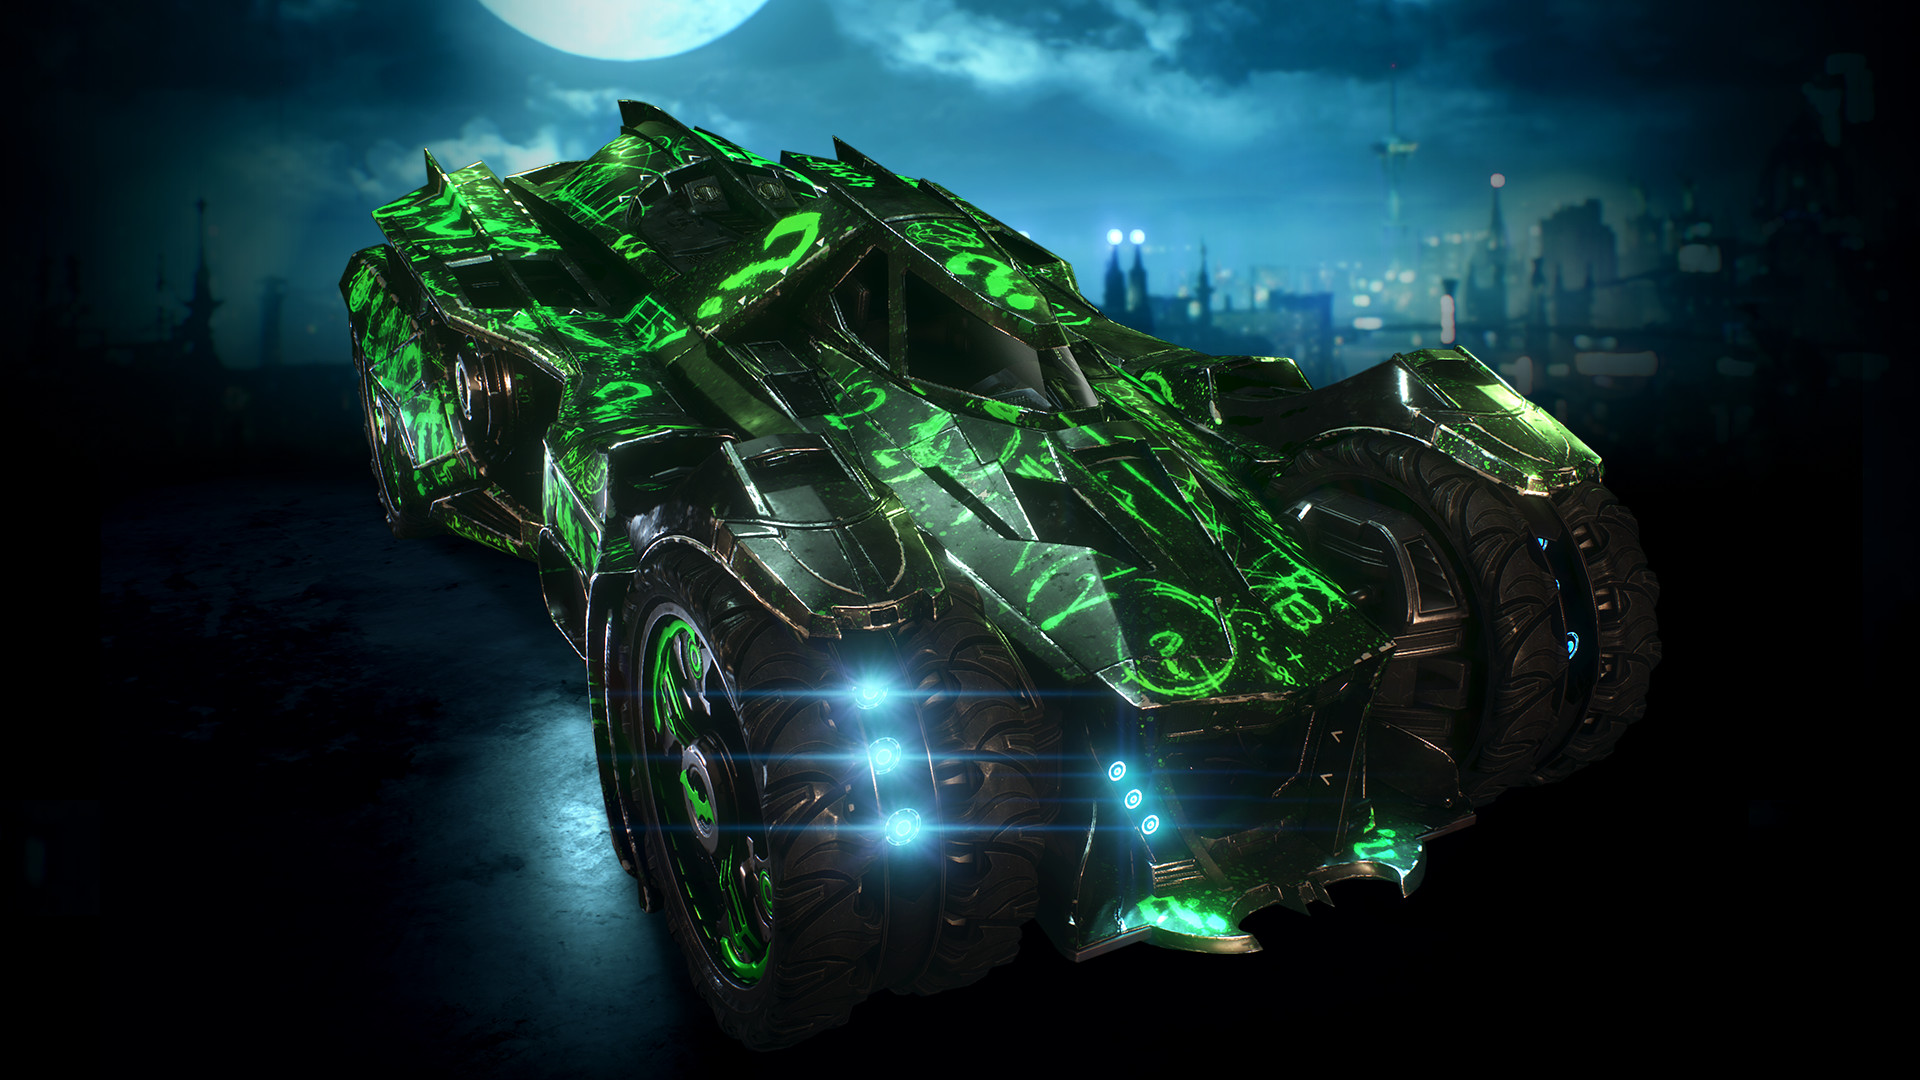 Batman™: Arkham Knight - Riddler Themed Batmobile Skin Featured Screenshot #1